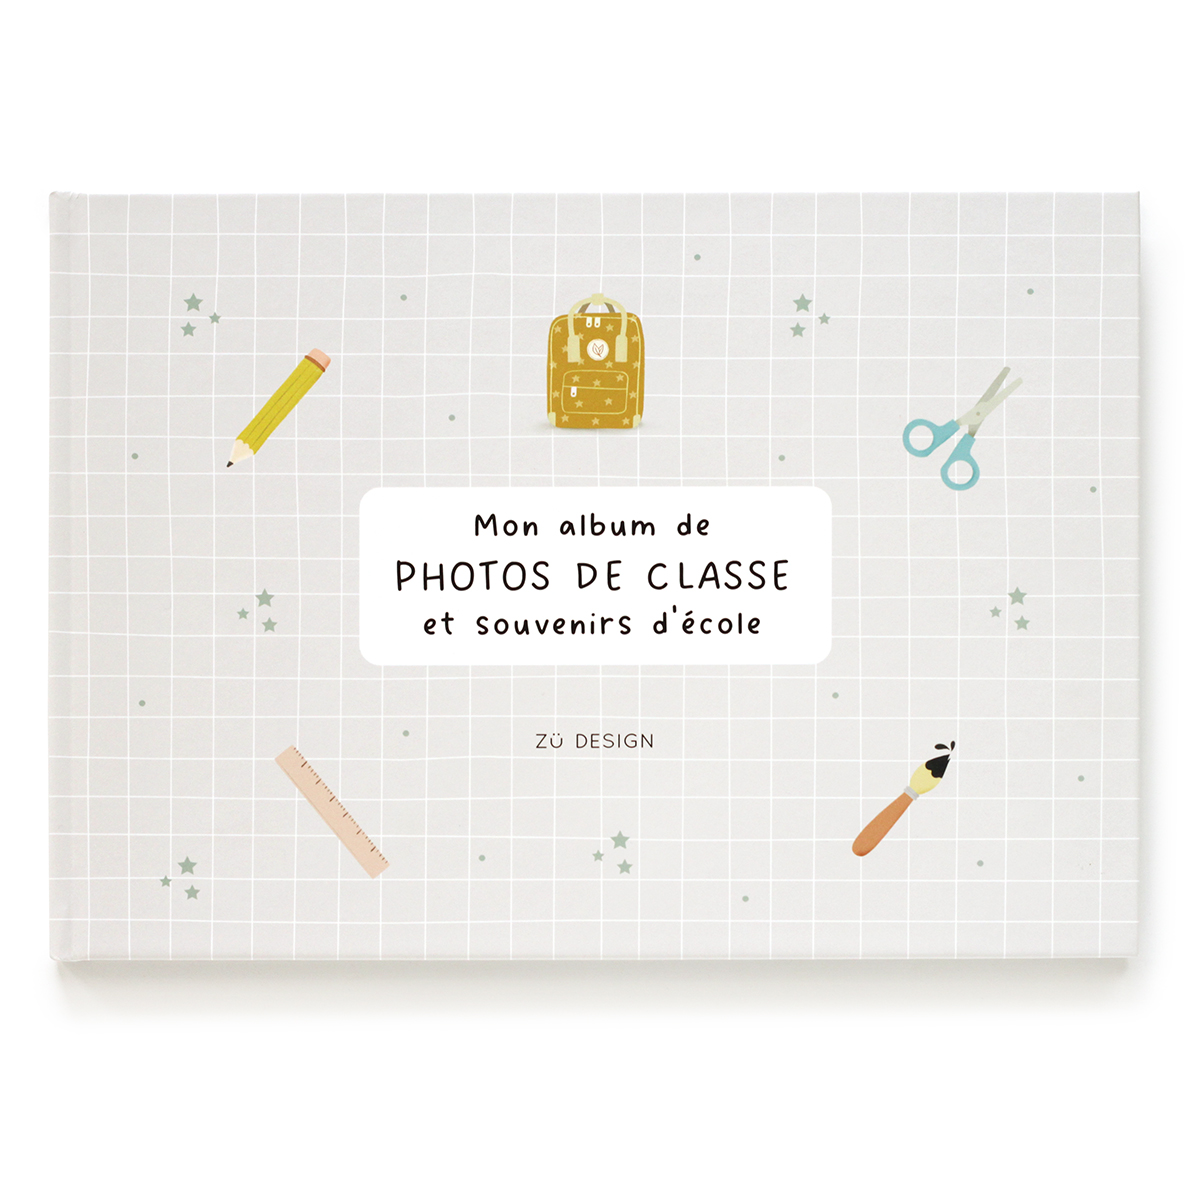 Album de photos de classe et souvenirs d'école, made in France - Zü